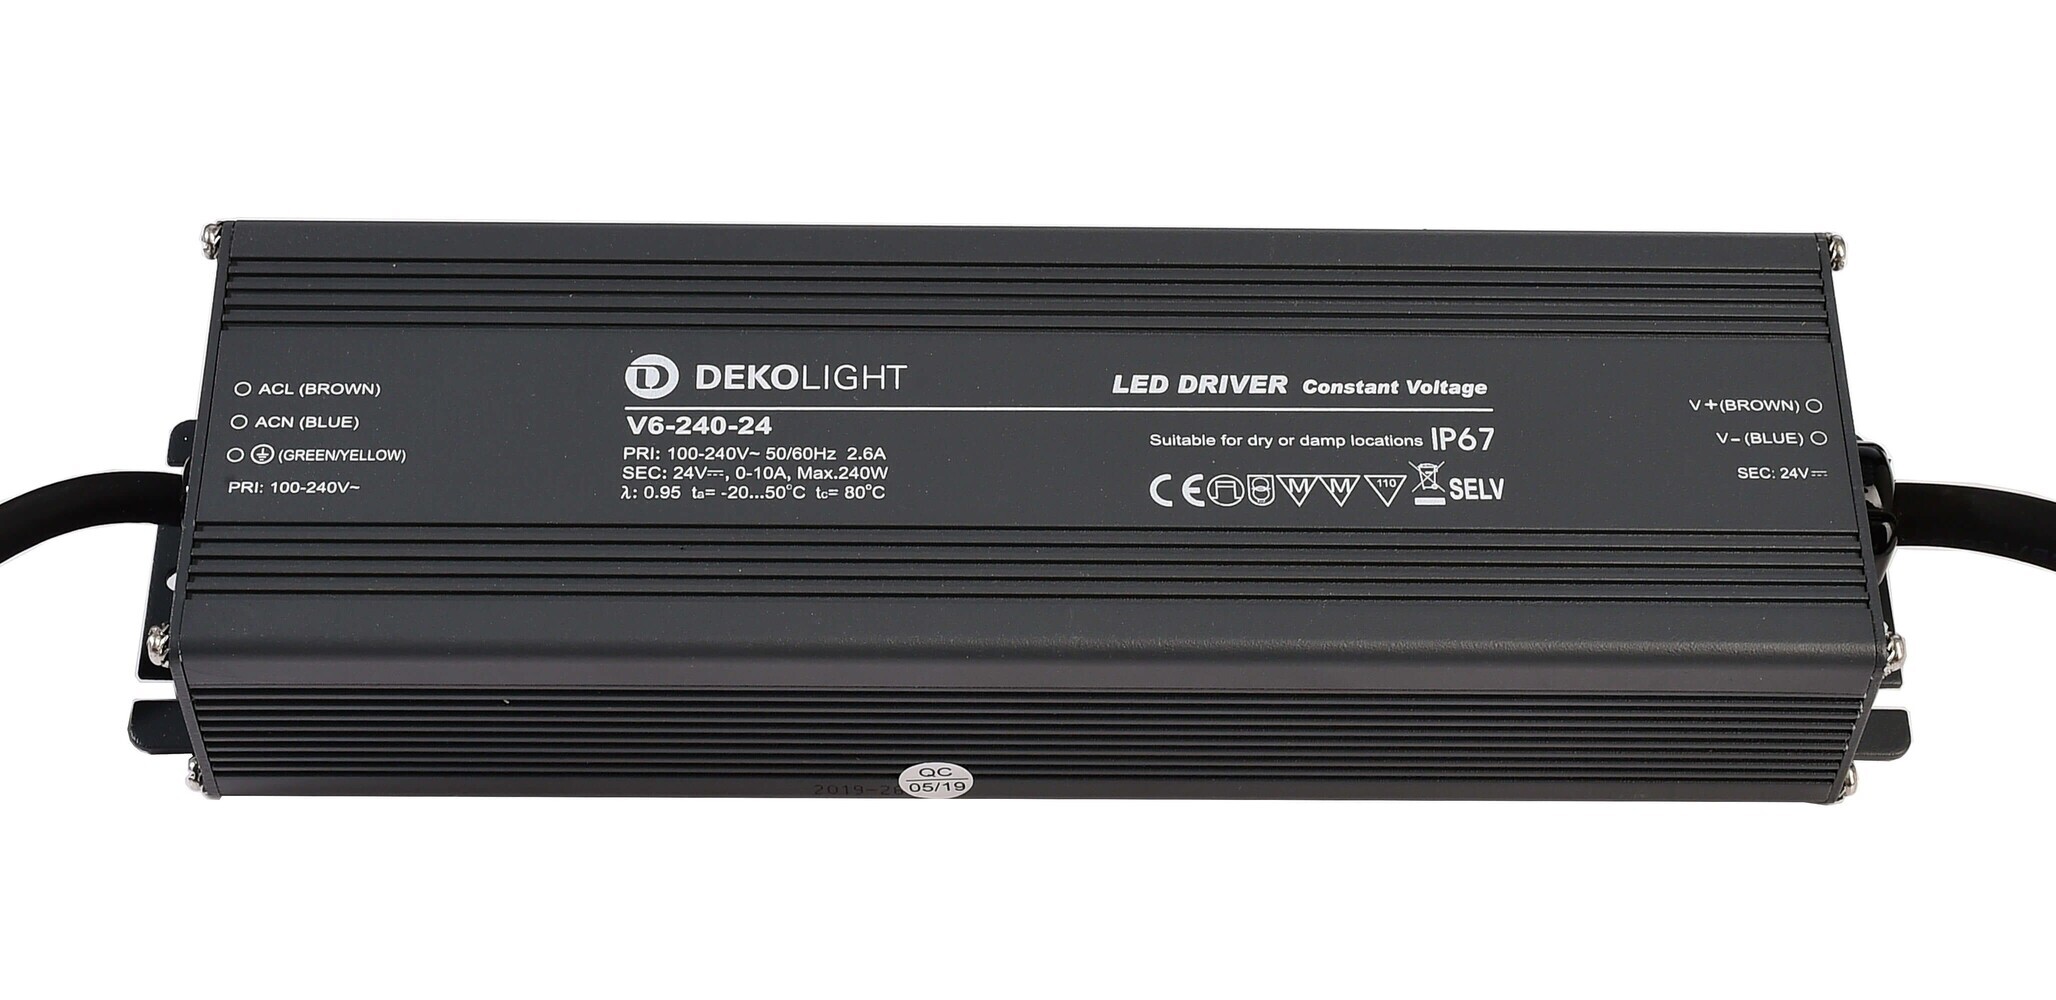 Hochwertiges, spannungskonstantes LED Netzteil von der Marke Deko-Light